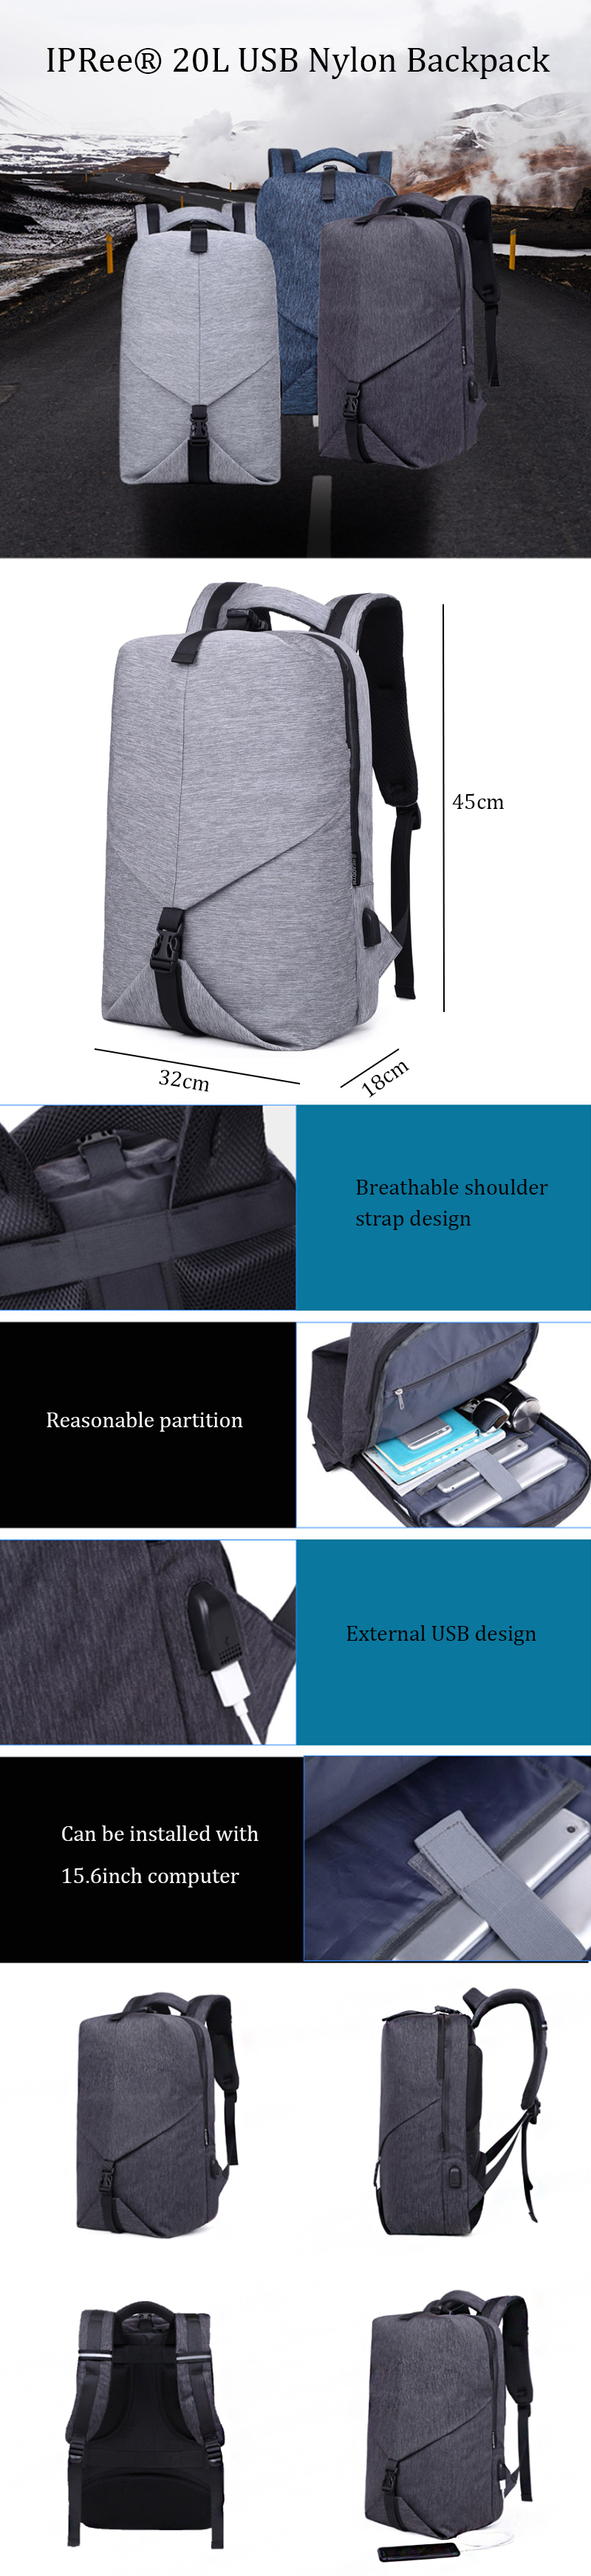 IPReereg-20L-USB-Nylon-Backpack-Teenager-School-Bag-156-Inch-Laptop-Bag-Waterproof-Shoulder-Bag-1371414-1